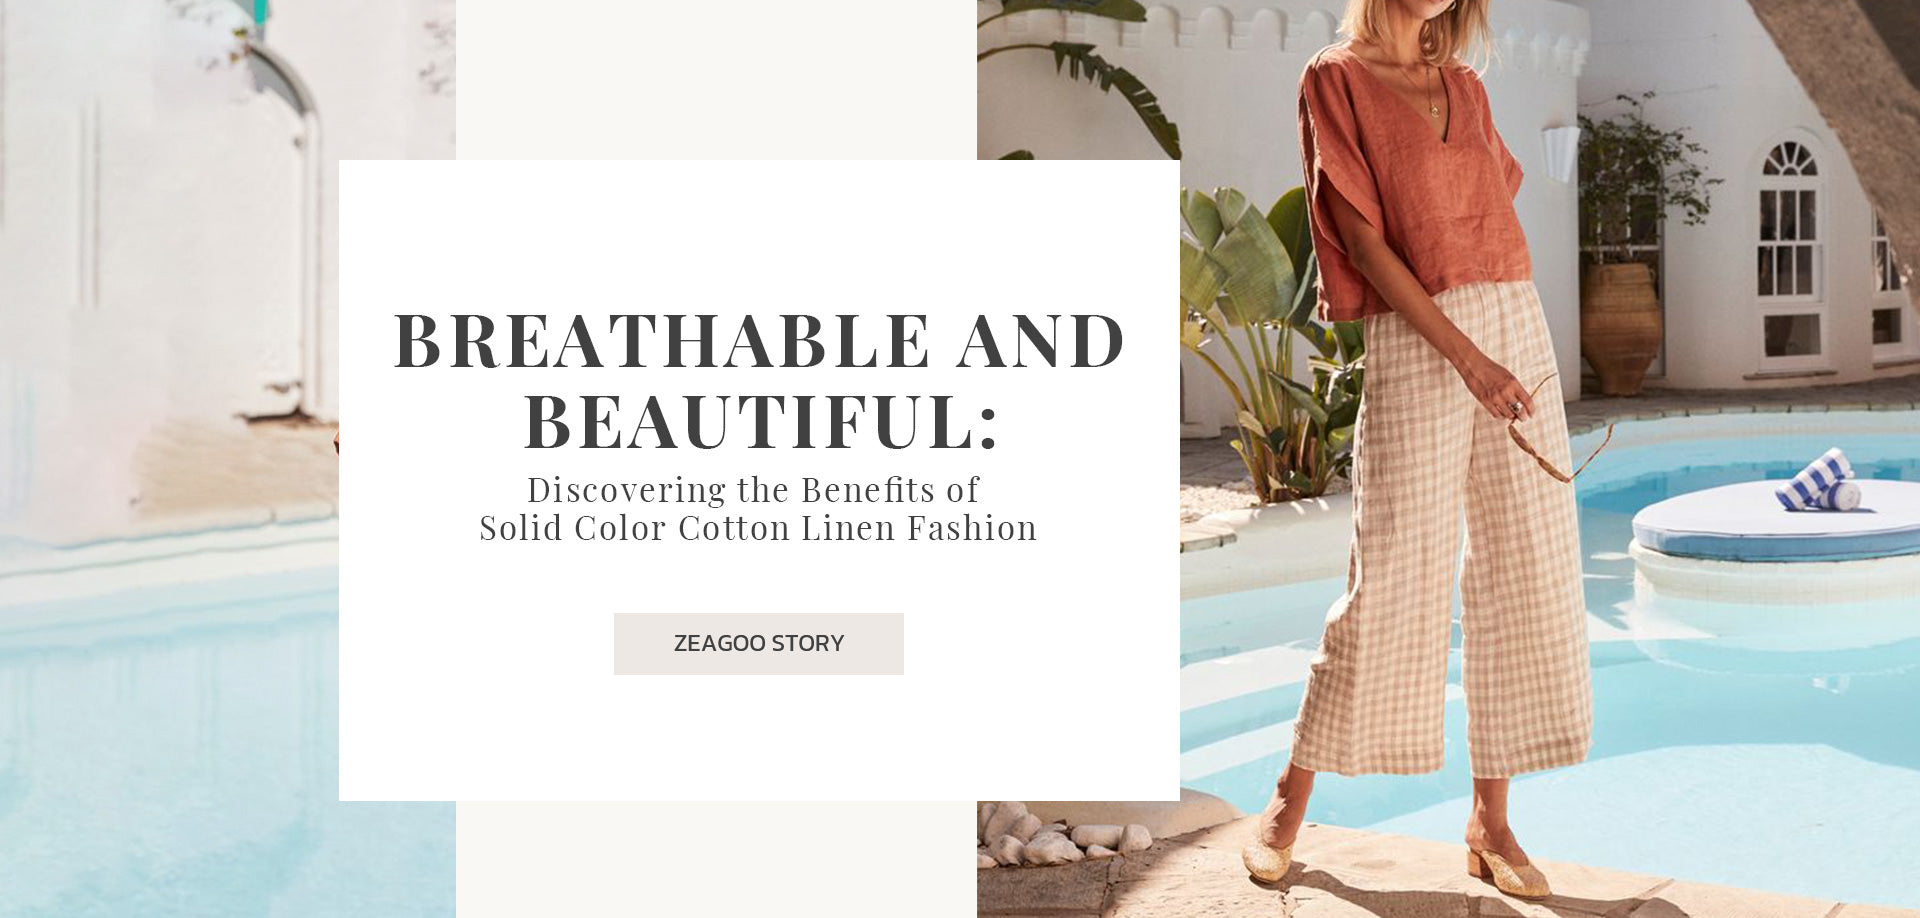 cotton linen fabric dress